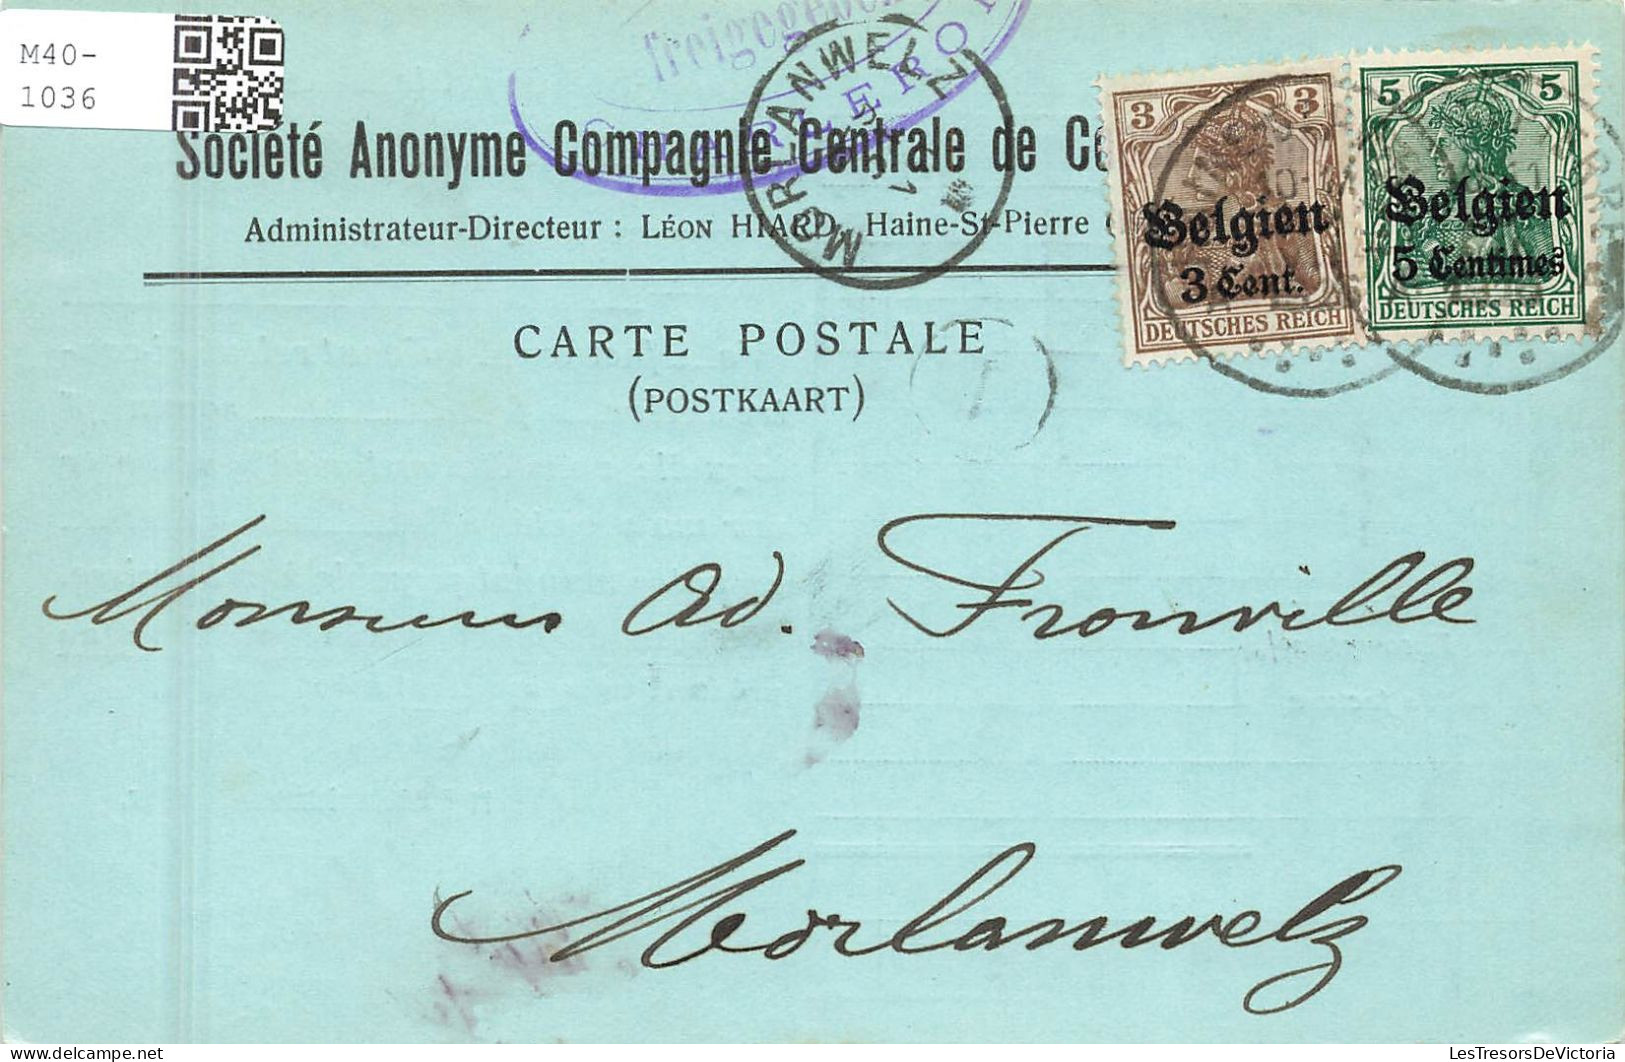 BELGIQUE - Société Anonyme Compagne Centrale De Co ? - Leon Hiard - Haine St Pierre - Carte Postale Ancienne - La Louviere